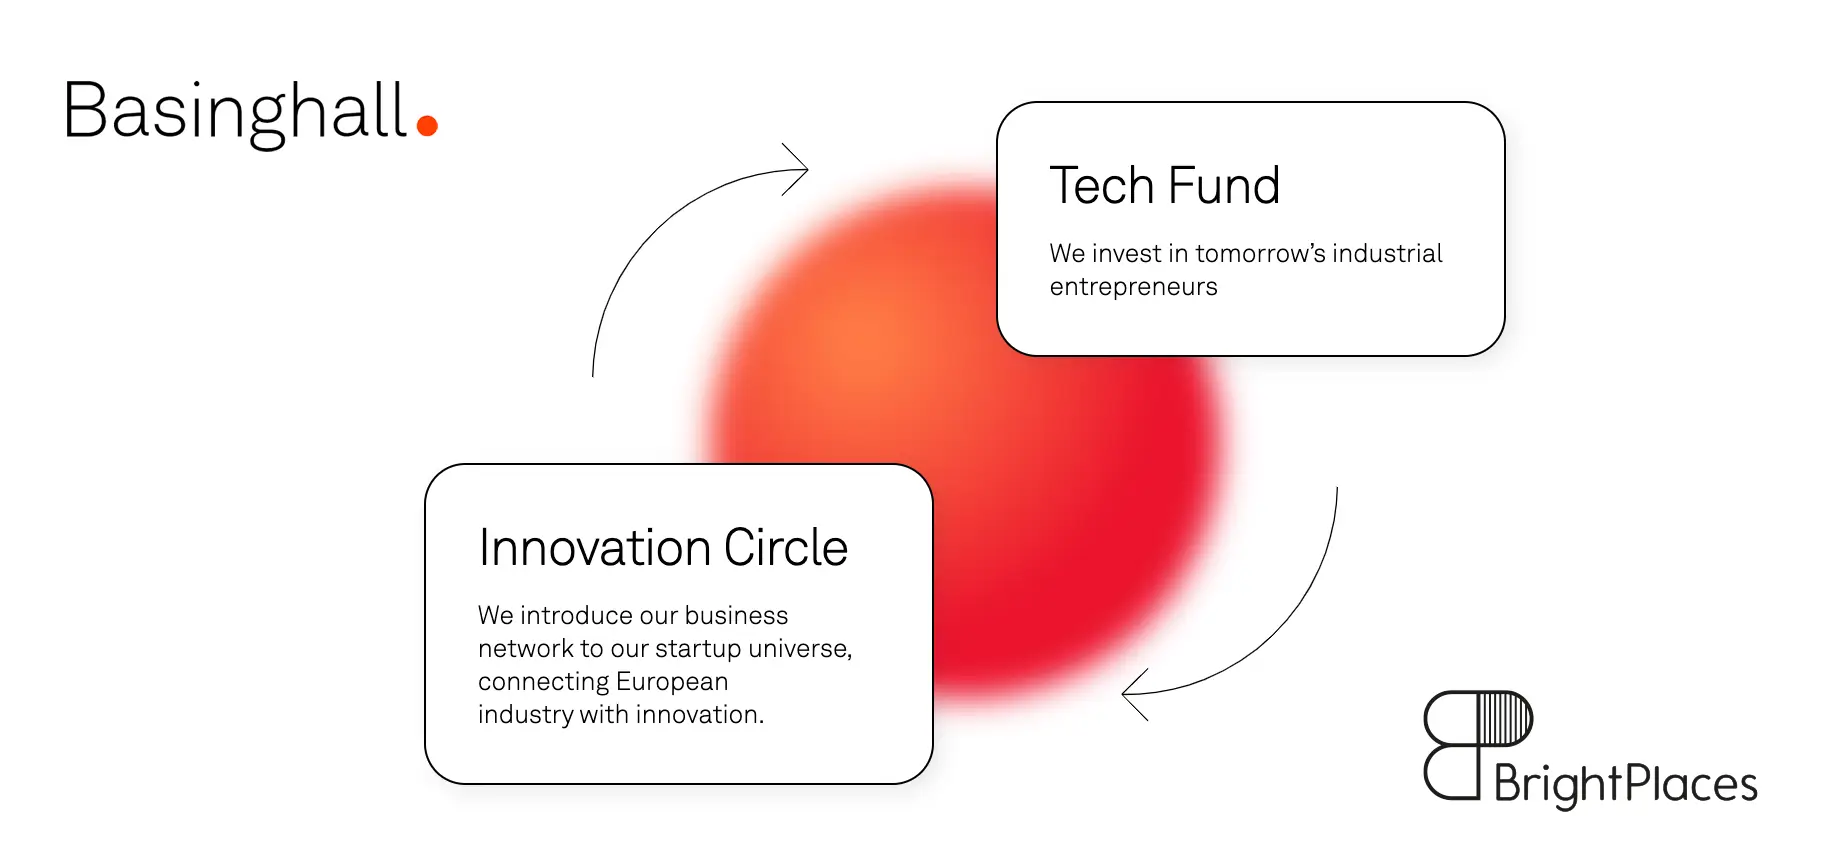 Diagramm von Basinghall Partners zeigt den Tech Fund, der in zukünftige industrielle Unternehmer investiert, und den Innovation Circle, der europäische Industrie mit innovativen Start-ups verbindet.